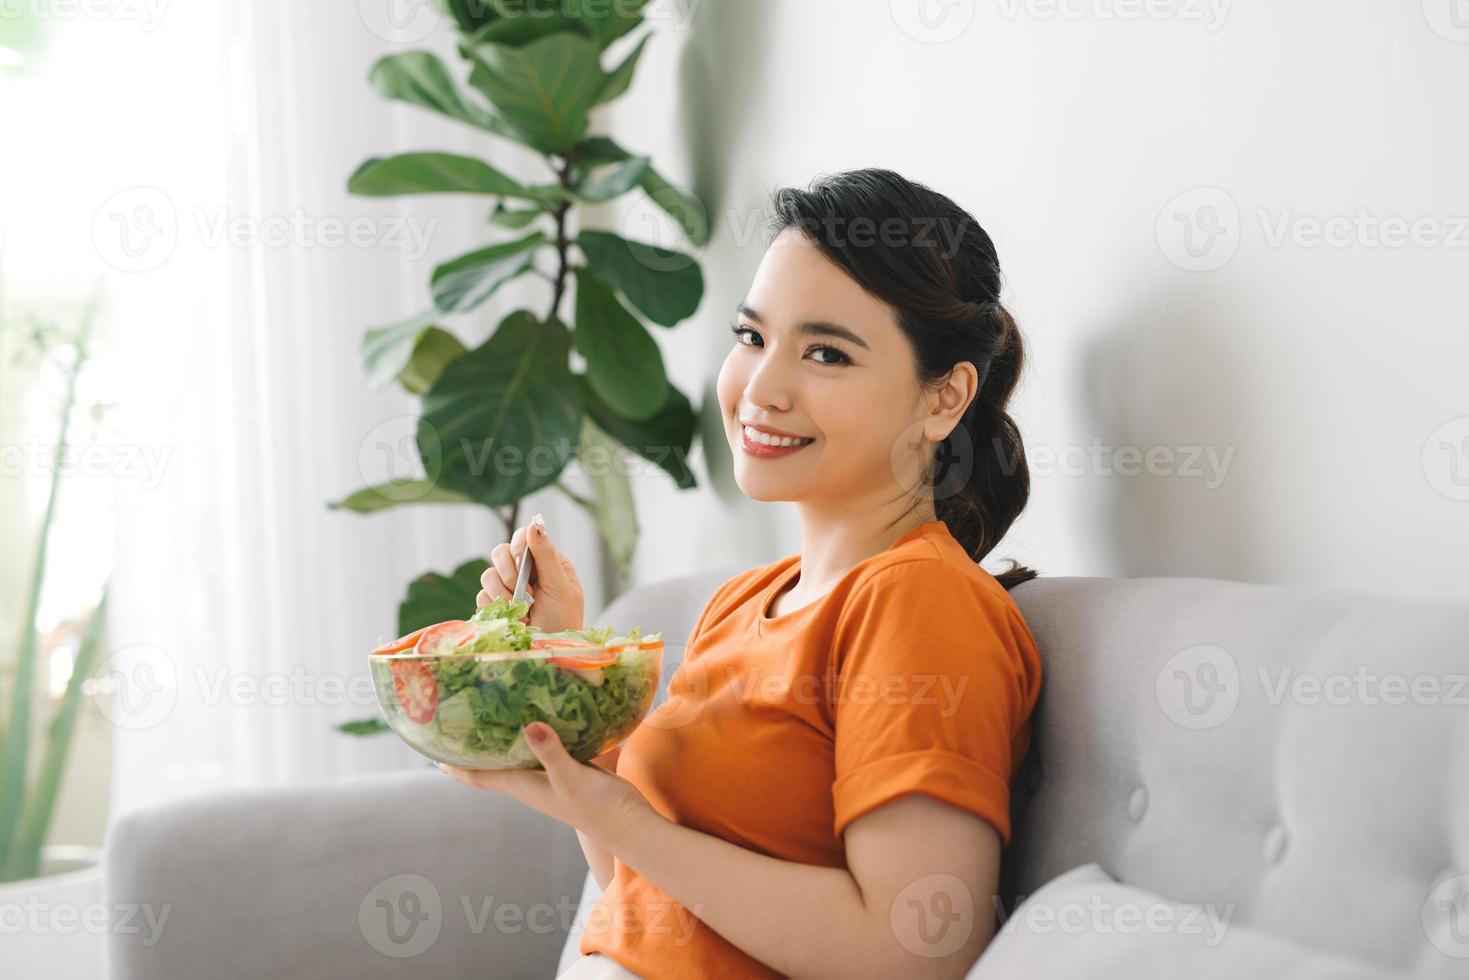 jovem relaxando no sofá em casa e comendo uma salada fresca de jardim, estilo de vida saudável e conceito de nutrição foto